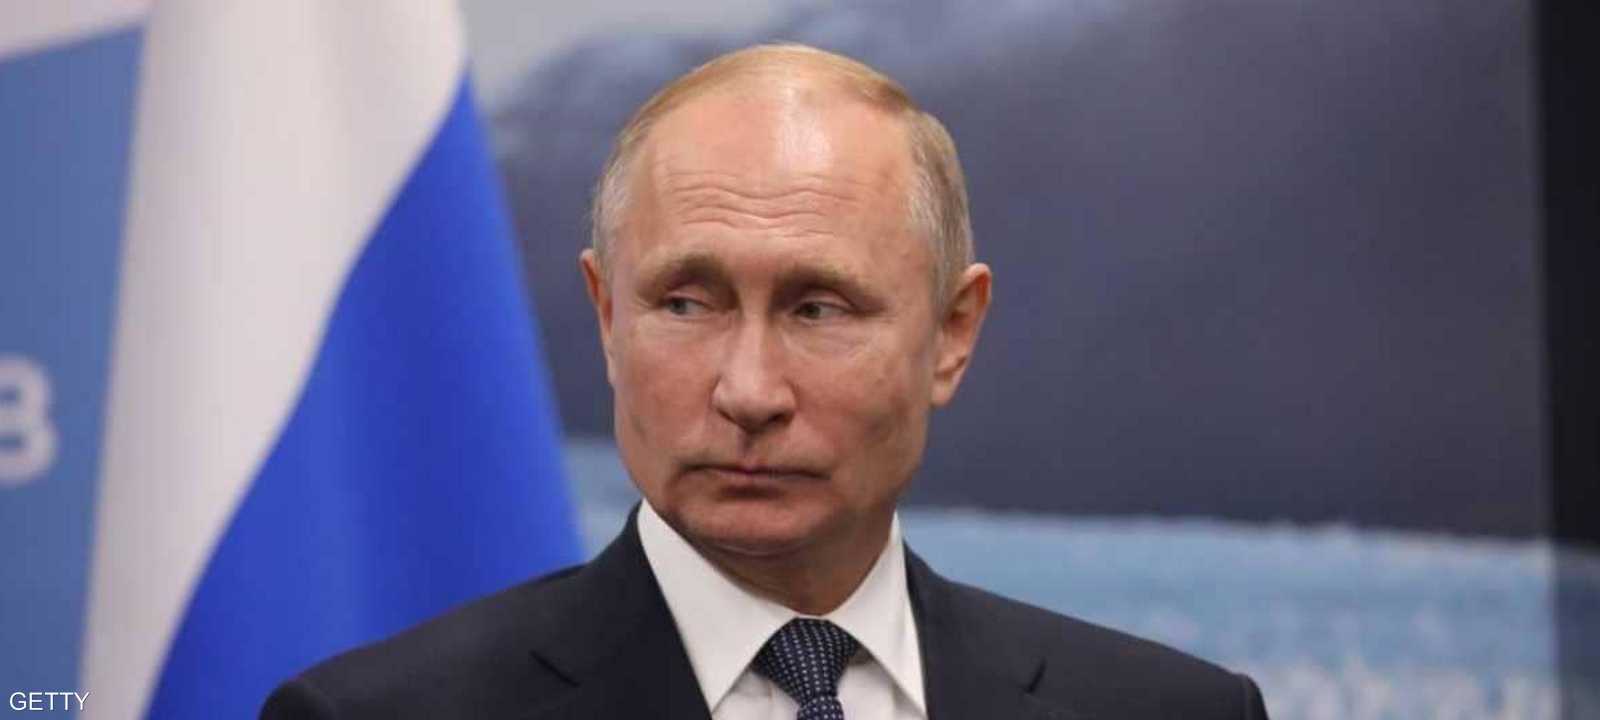 بوتن يحذر من تنامي التهديدات النووية